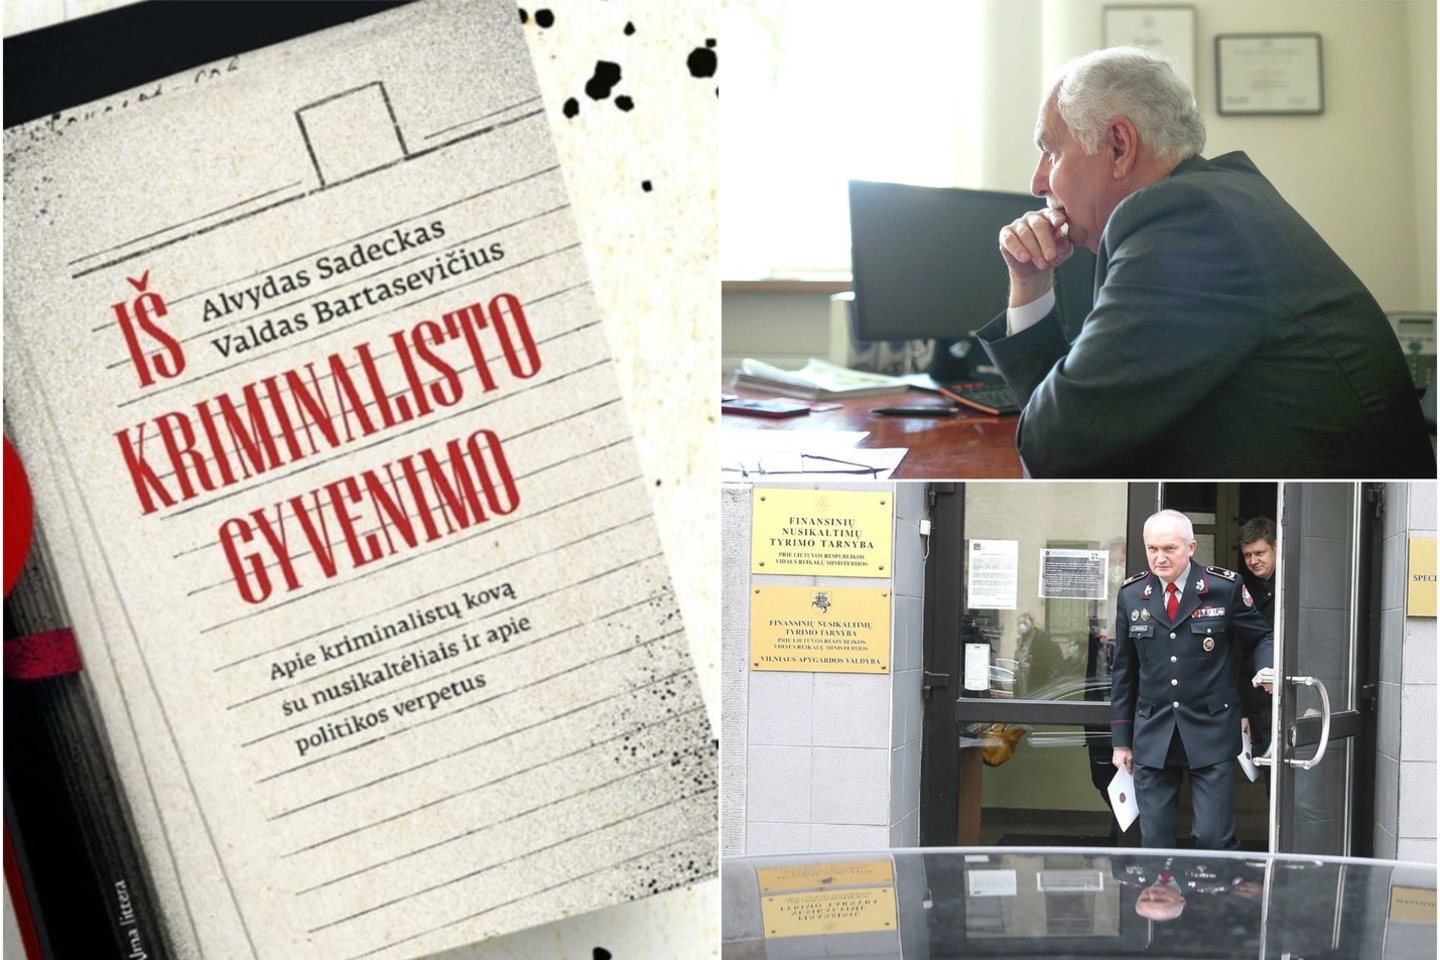 Pirmasis nepriklausomos Lietuvos kriminalinės policijos vadovas A.Sadeckas pristato naują knygą, kurioje atskleidžia žiaurų mafijos gyvenimą.